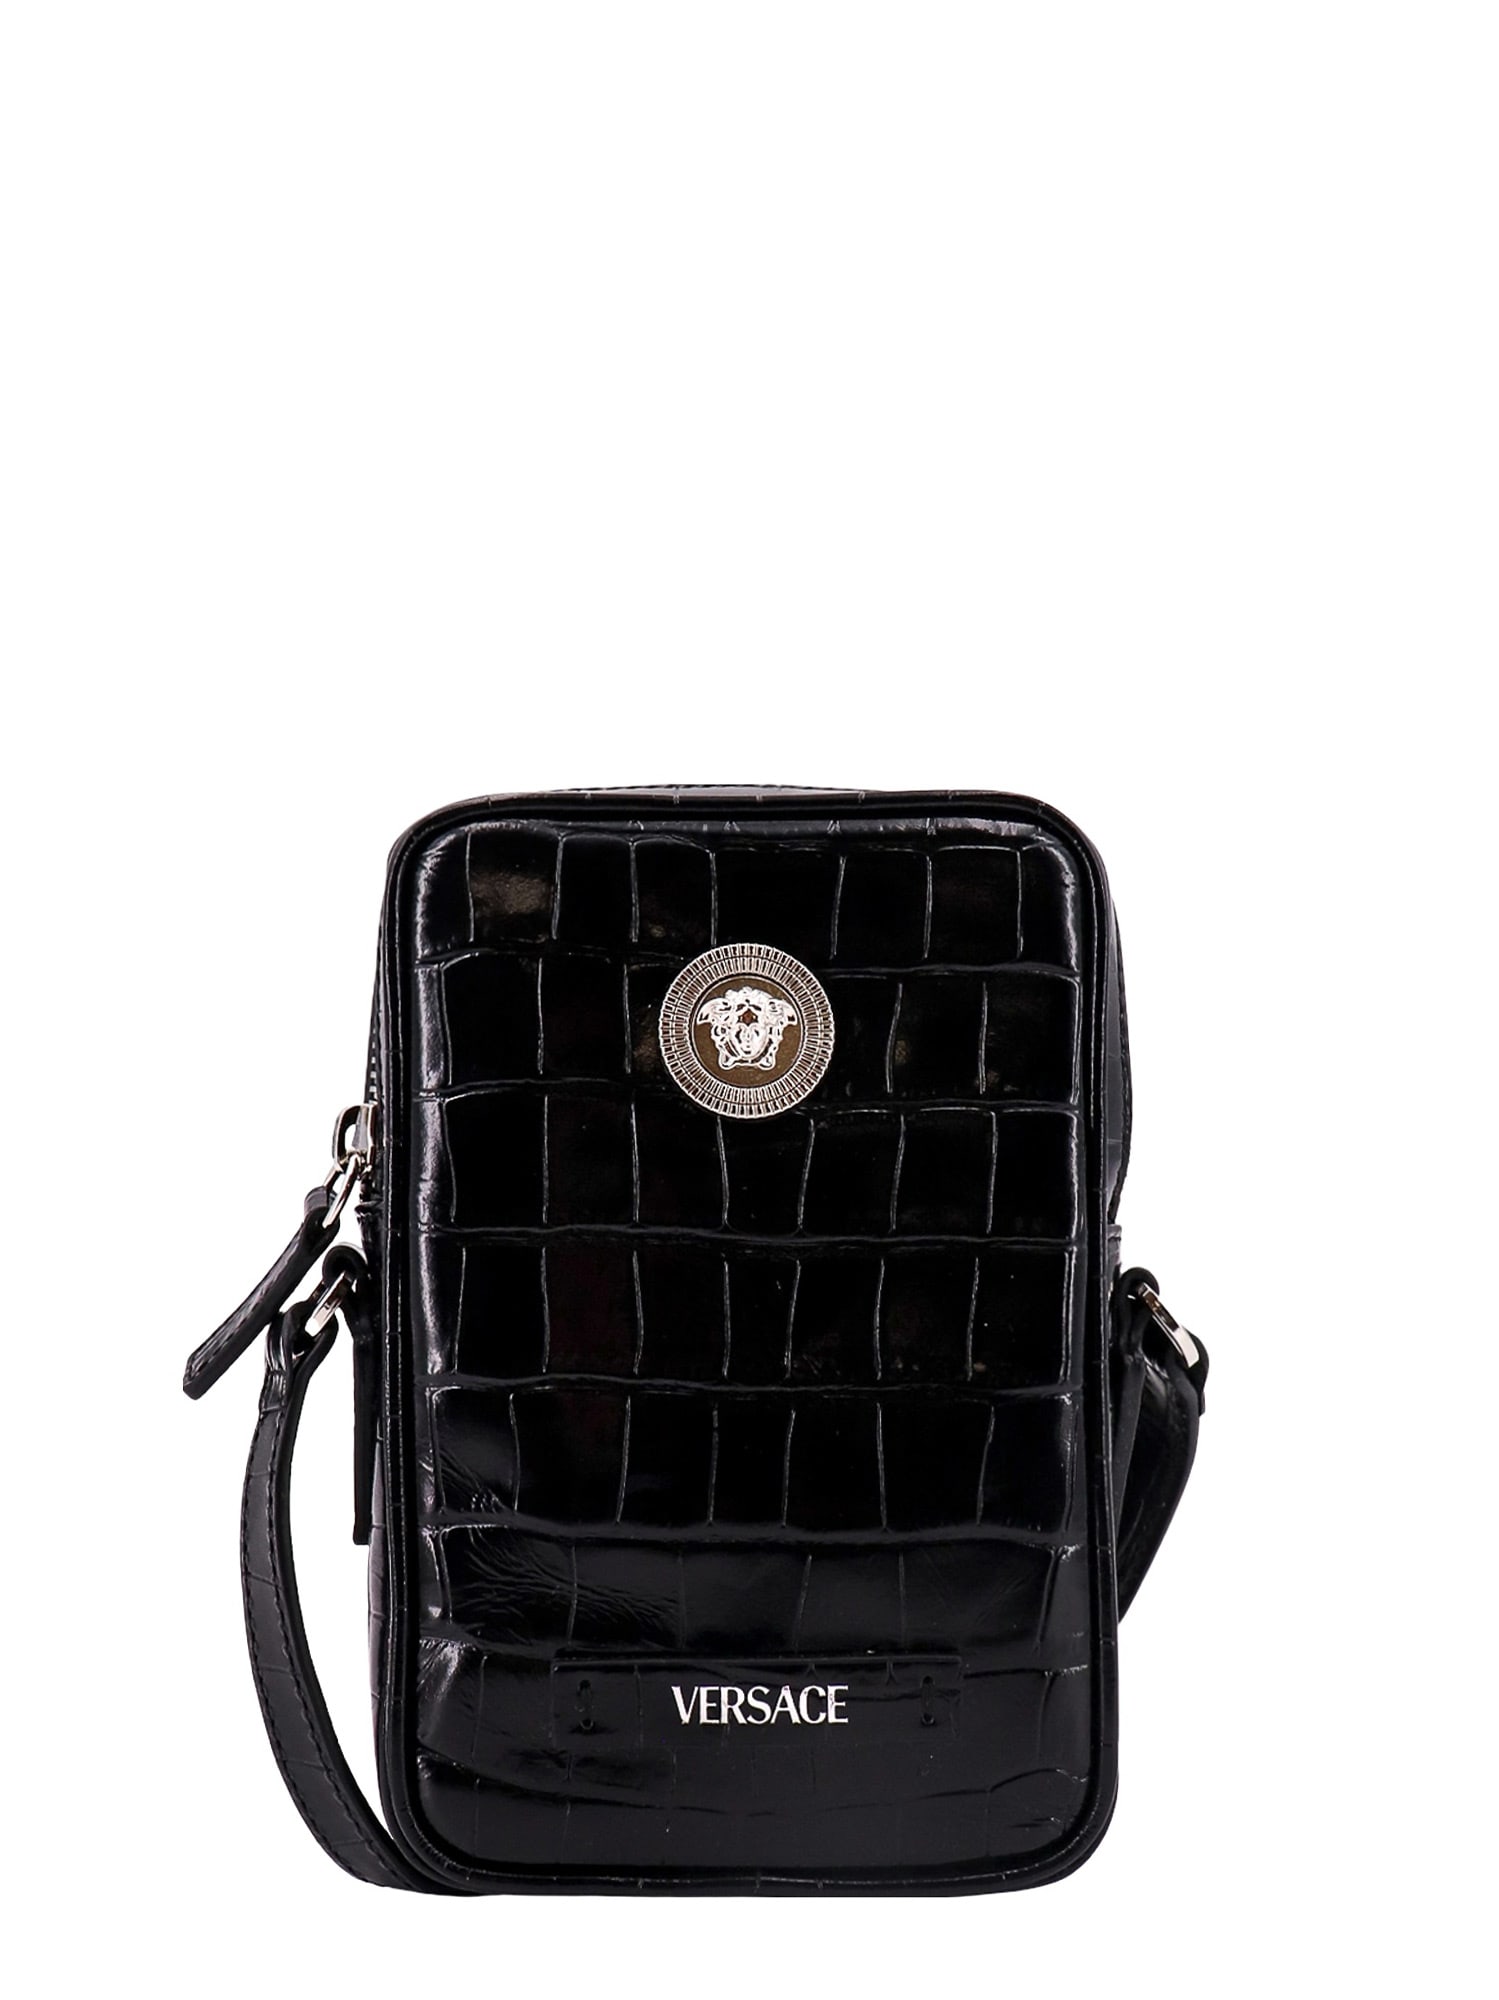 Versus Lion Logo Leather Shoulder Bag in Black